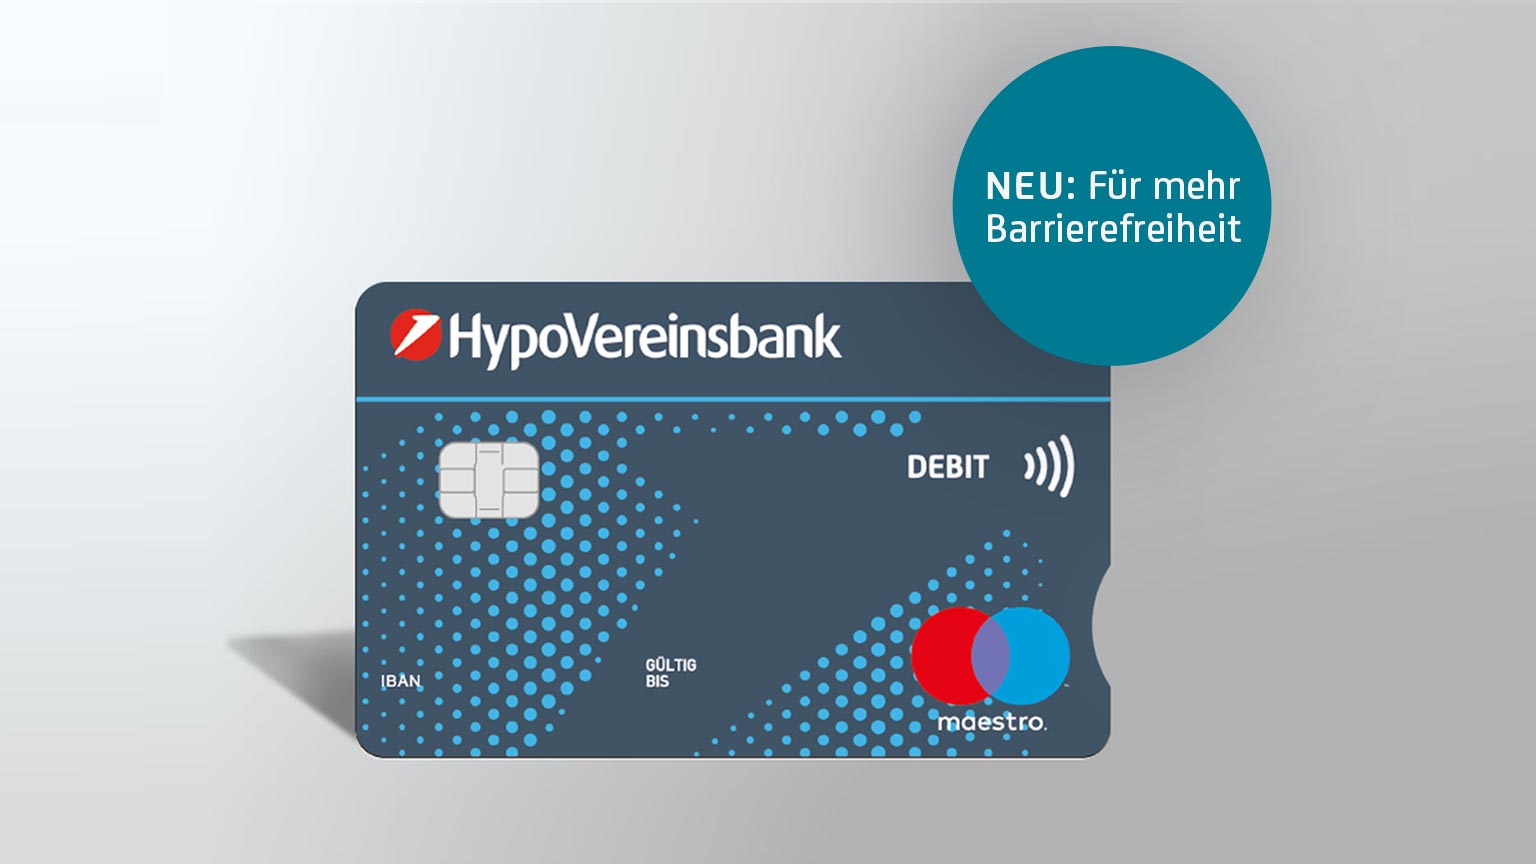 Ihr treuer Begleiter: Die HVB girocard (Debitkarte)